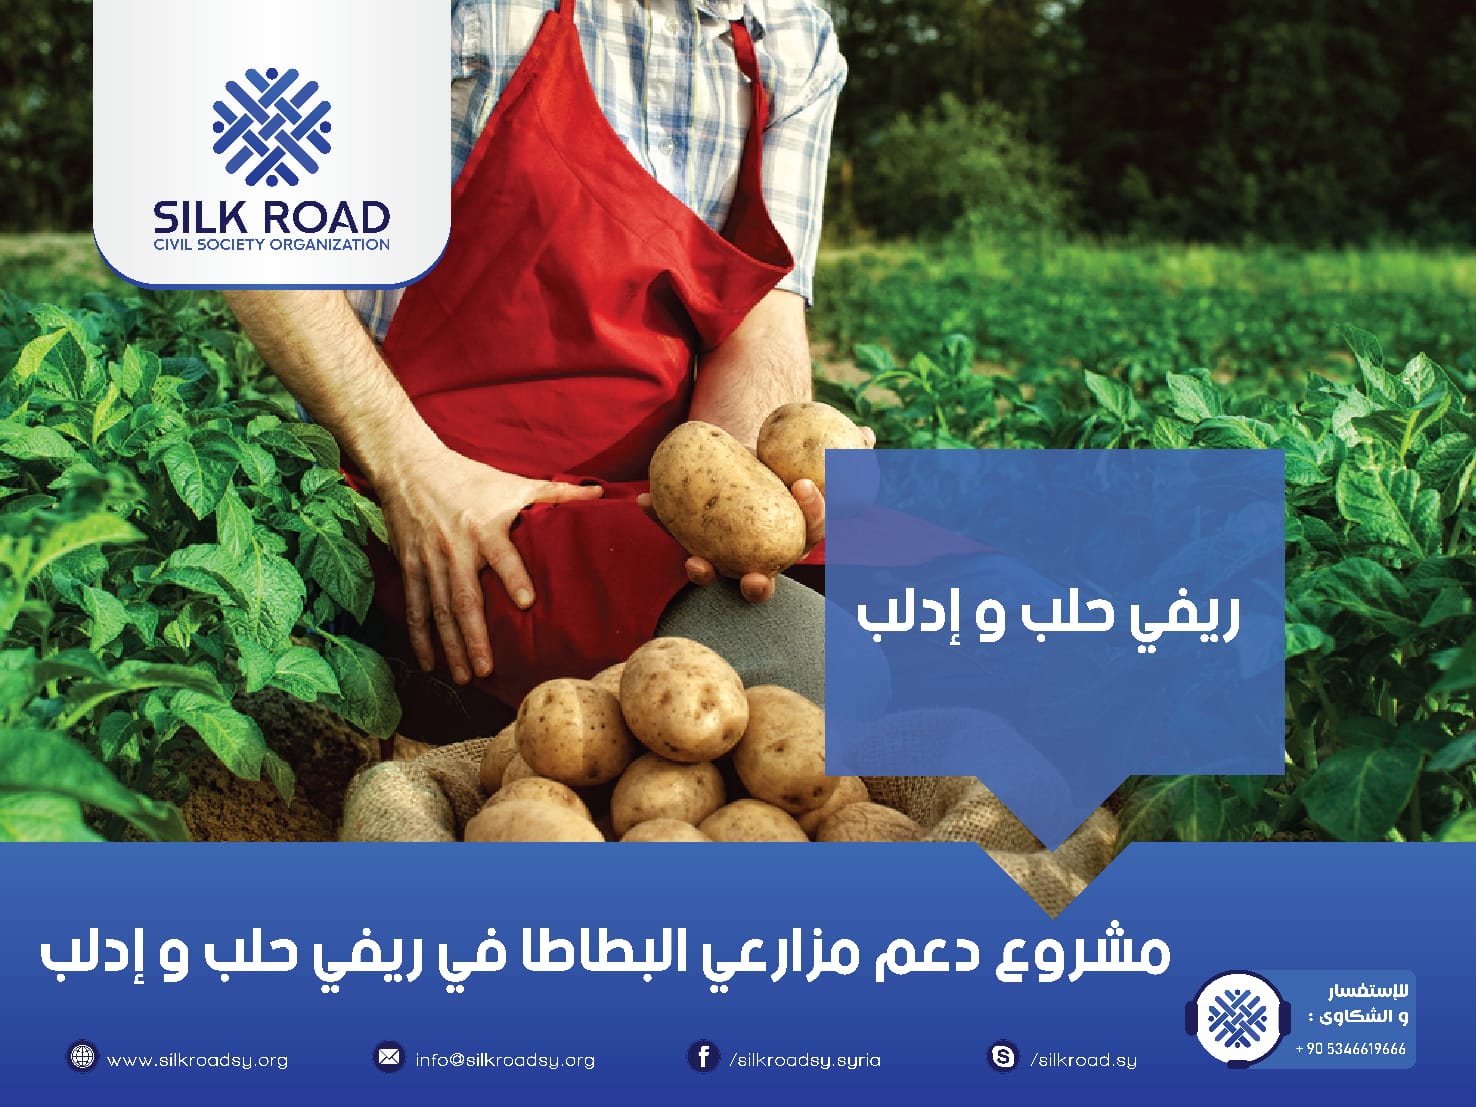 زيادة توافر الغذاء في ريفي إدلب وحلب من خلال دعم مزارعي البطاطا وتوفير الخضروات الطازجة للأسر الأكثر ضعفاً